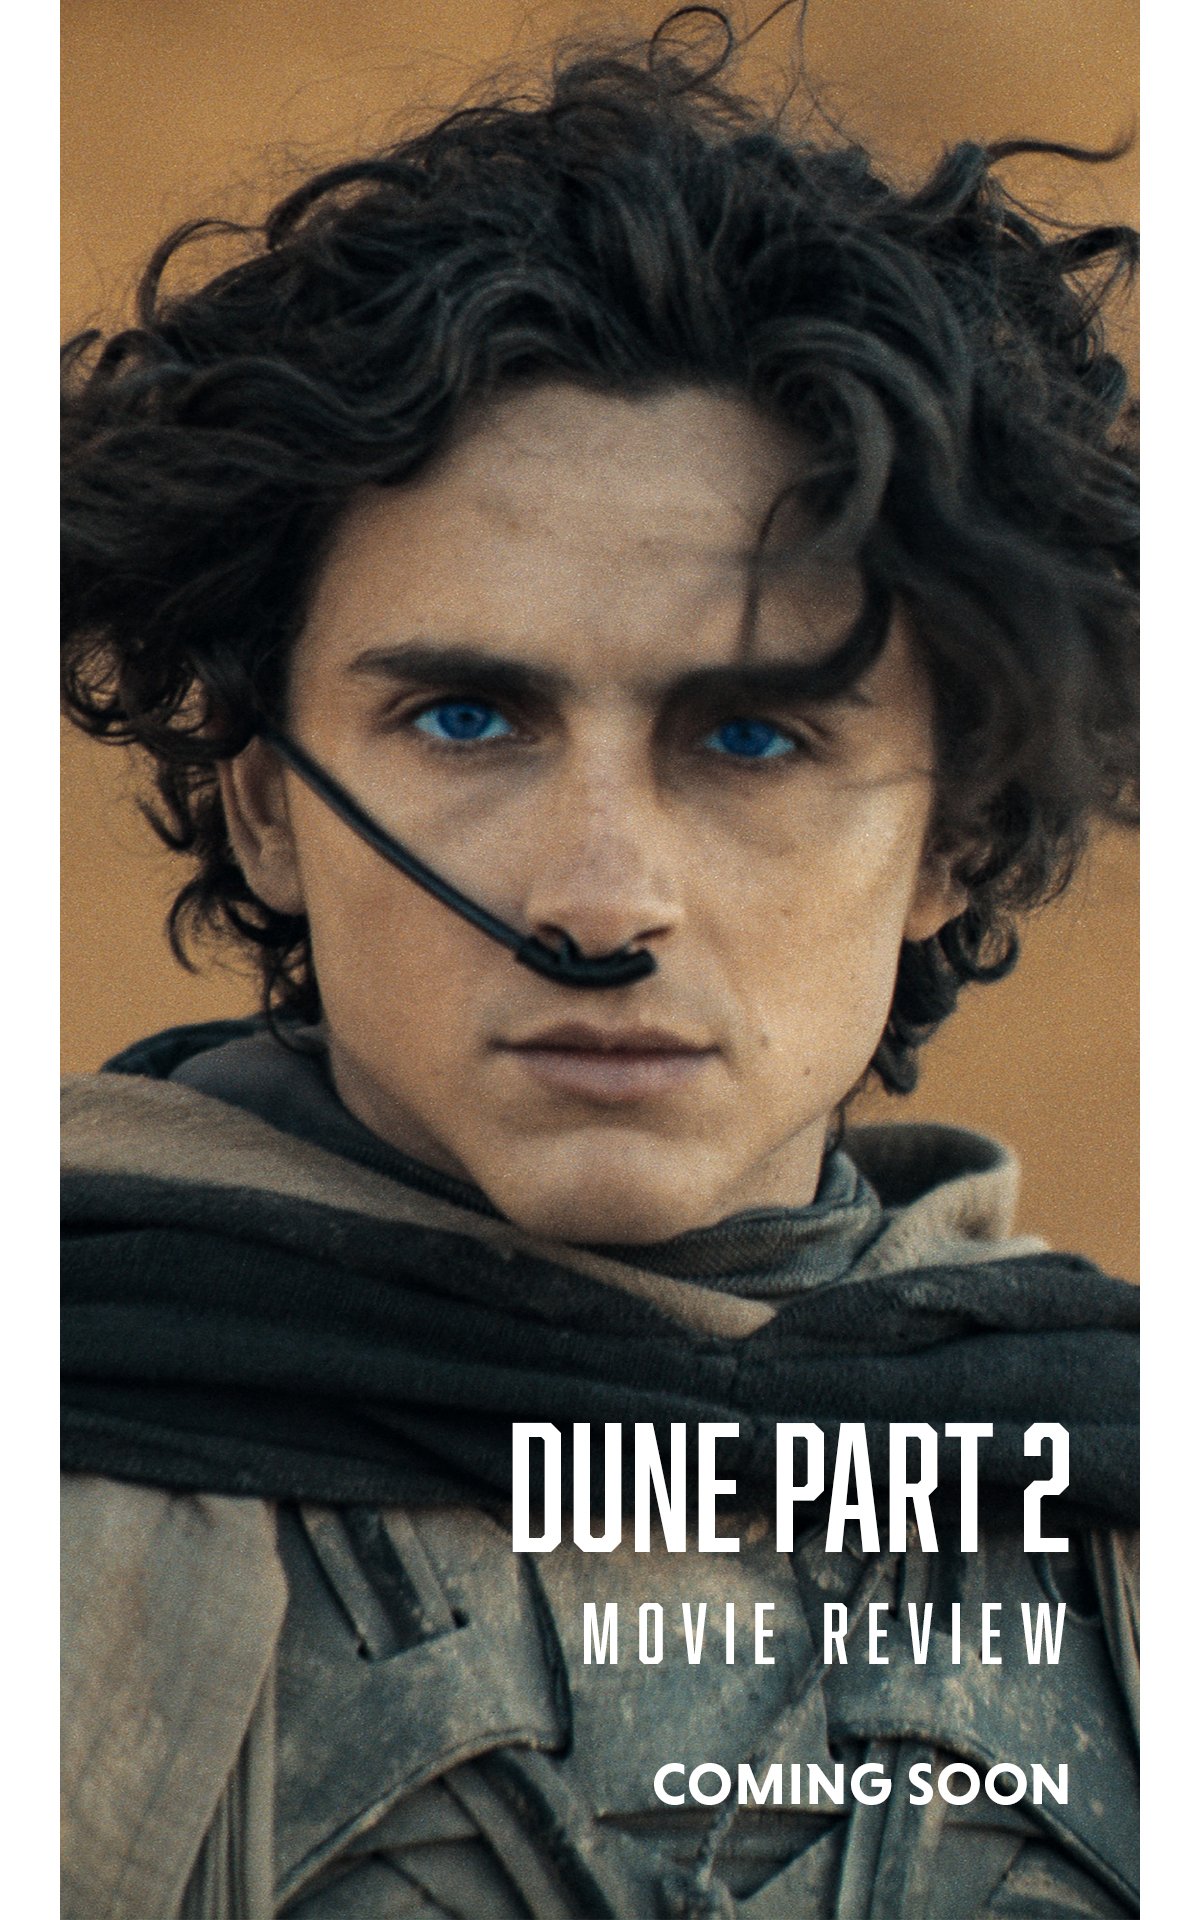 Reel-Buzzed-Dune-Part-2-Coming-Soon.jpg